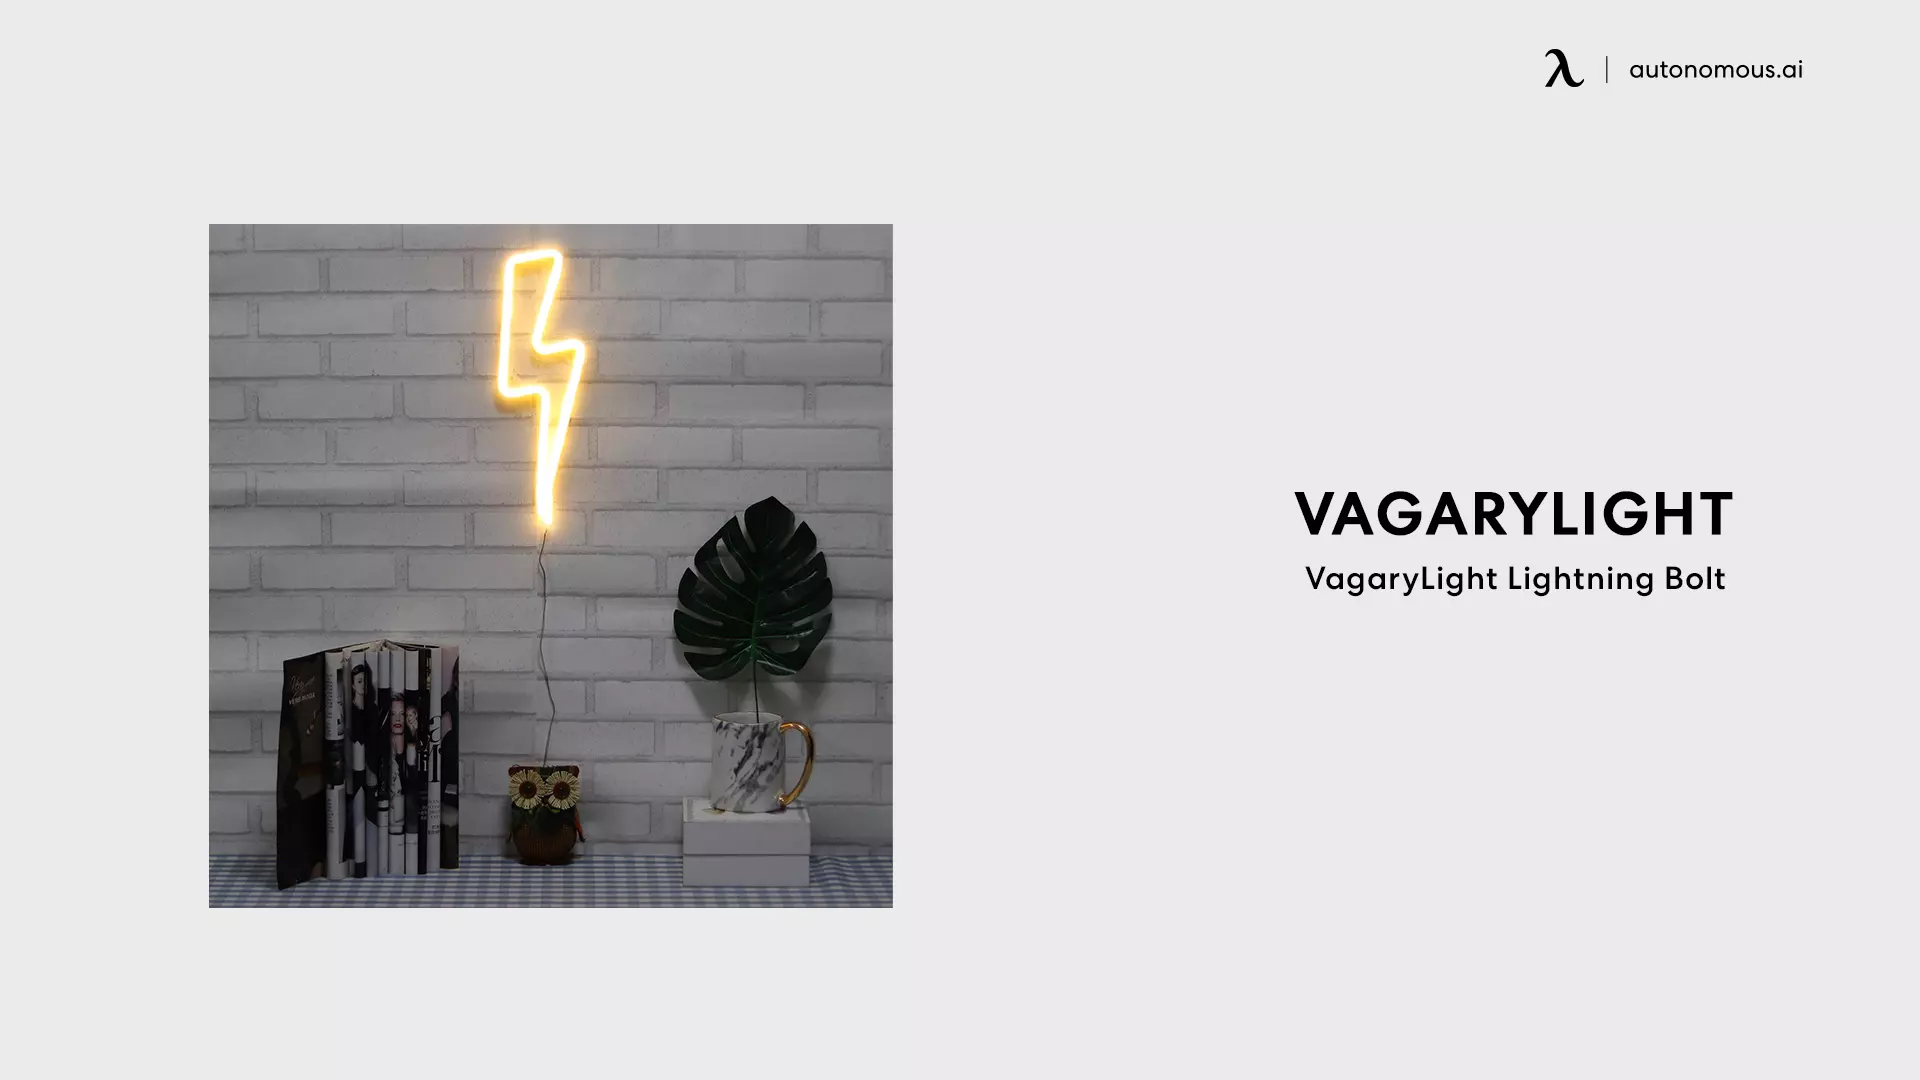 VagaryLight Lightning Bolt - gaming lights for wall